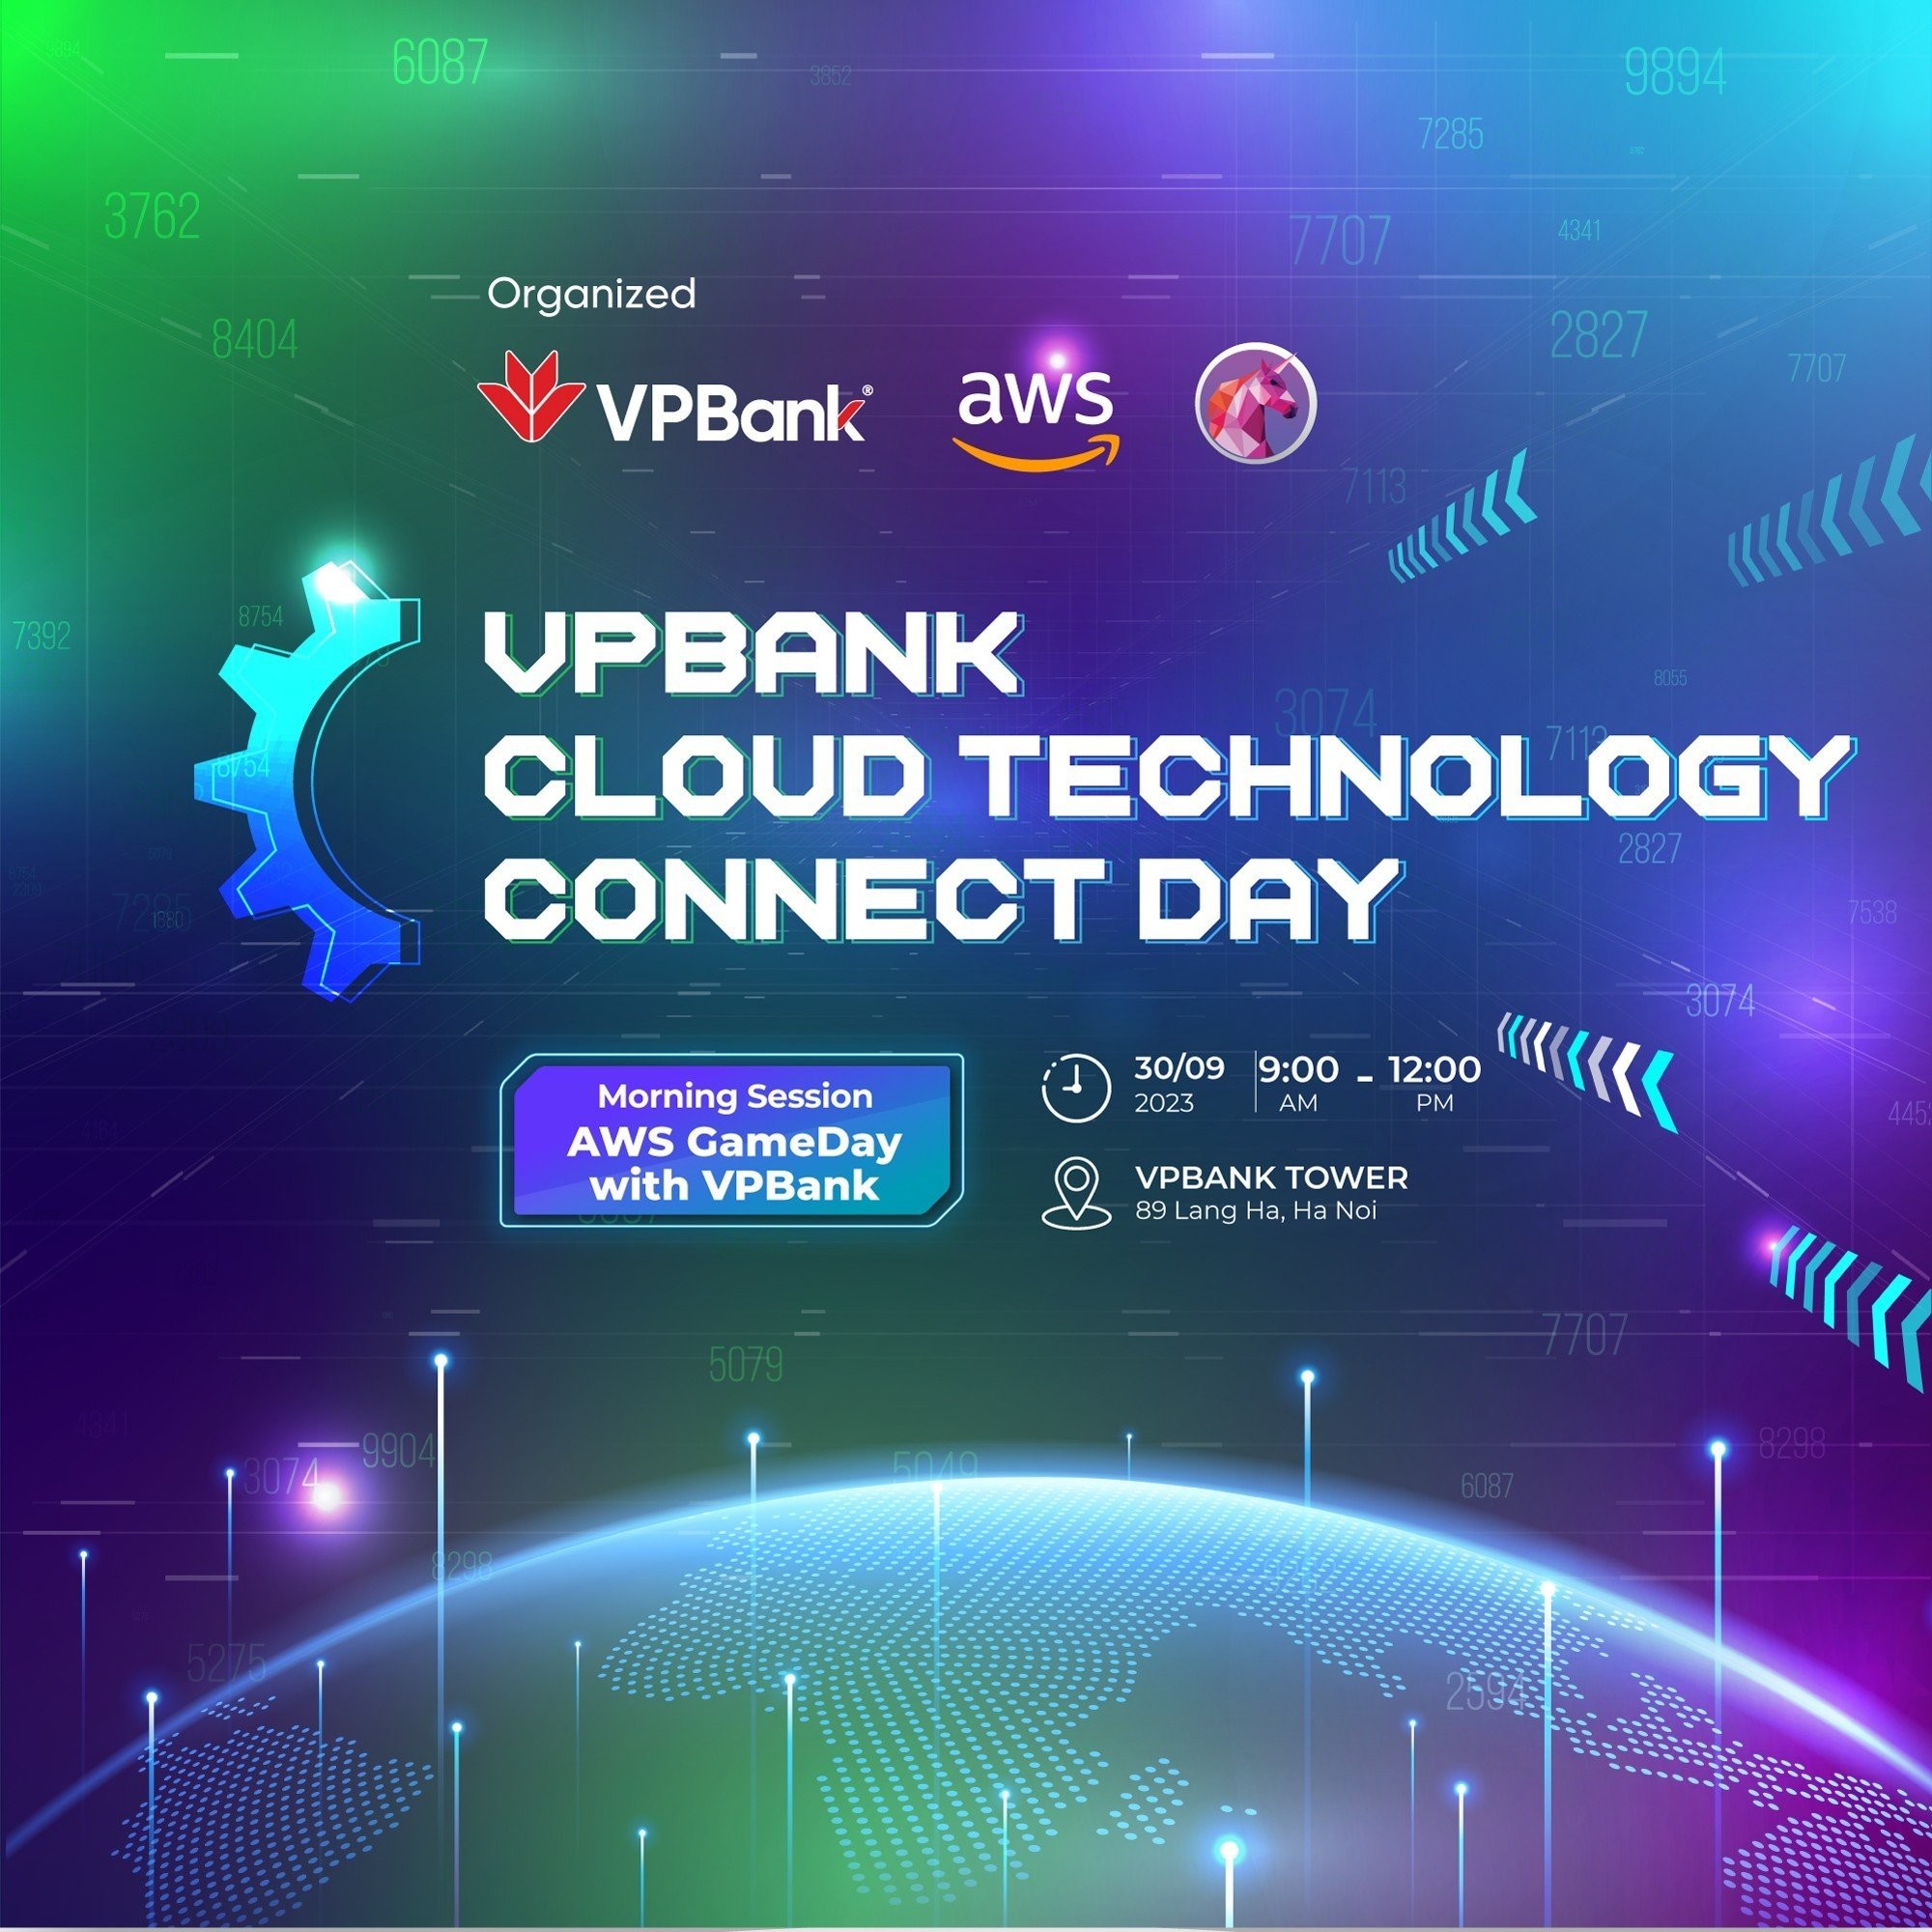 vpbank-cloud-technology-connect-day-su-kien-duoc-cac-chuyen-gia-cong-nghe-trong-linh-vuc-tai-chinh-ngan-hang-mong-doi-1695203306.jpg